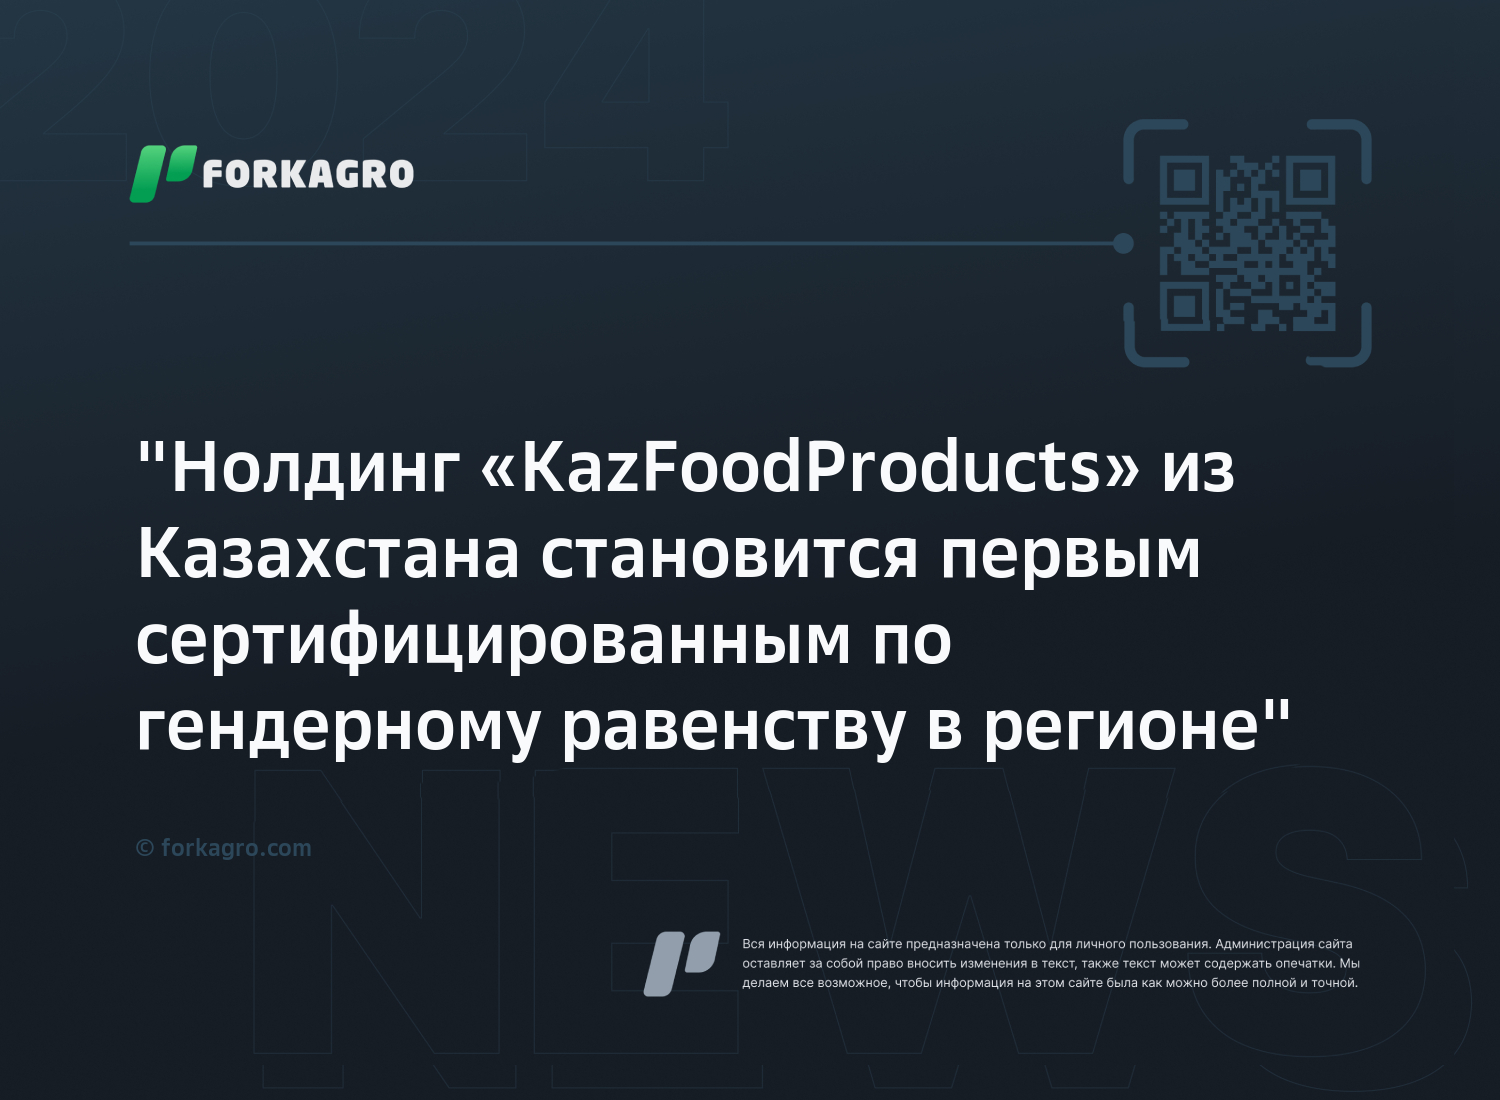 "Hолдинг «KazFoodProducts» из Казахстана становится первым сертифицированным по гендерному равенству в регионе"